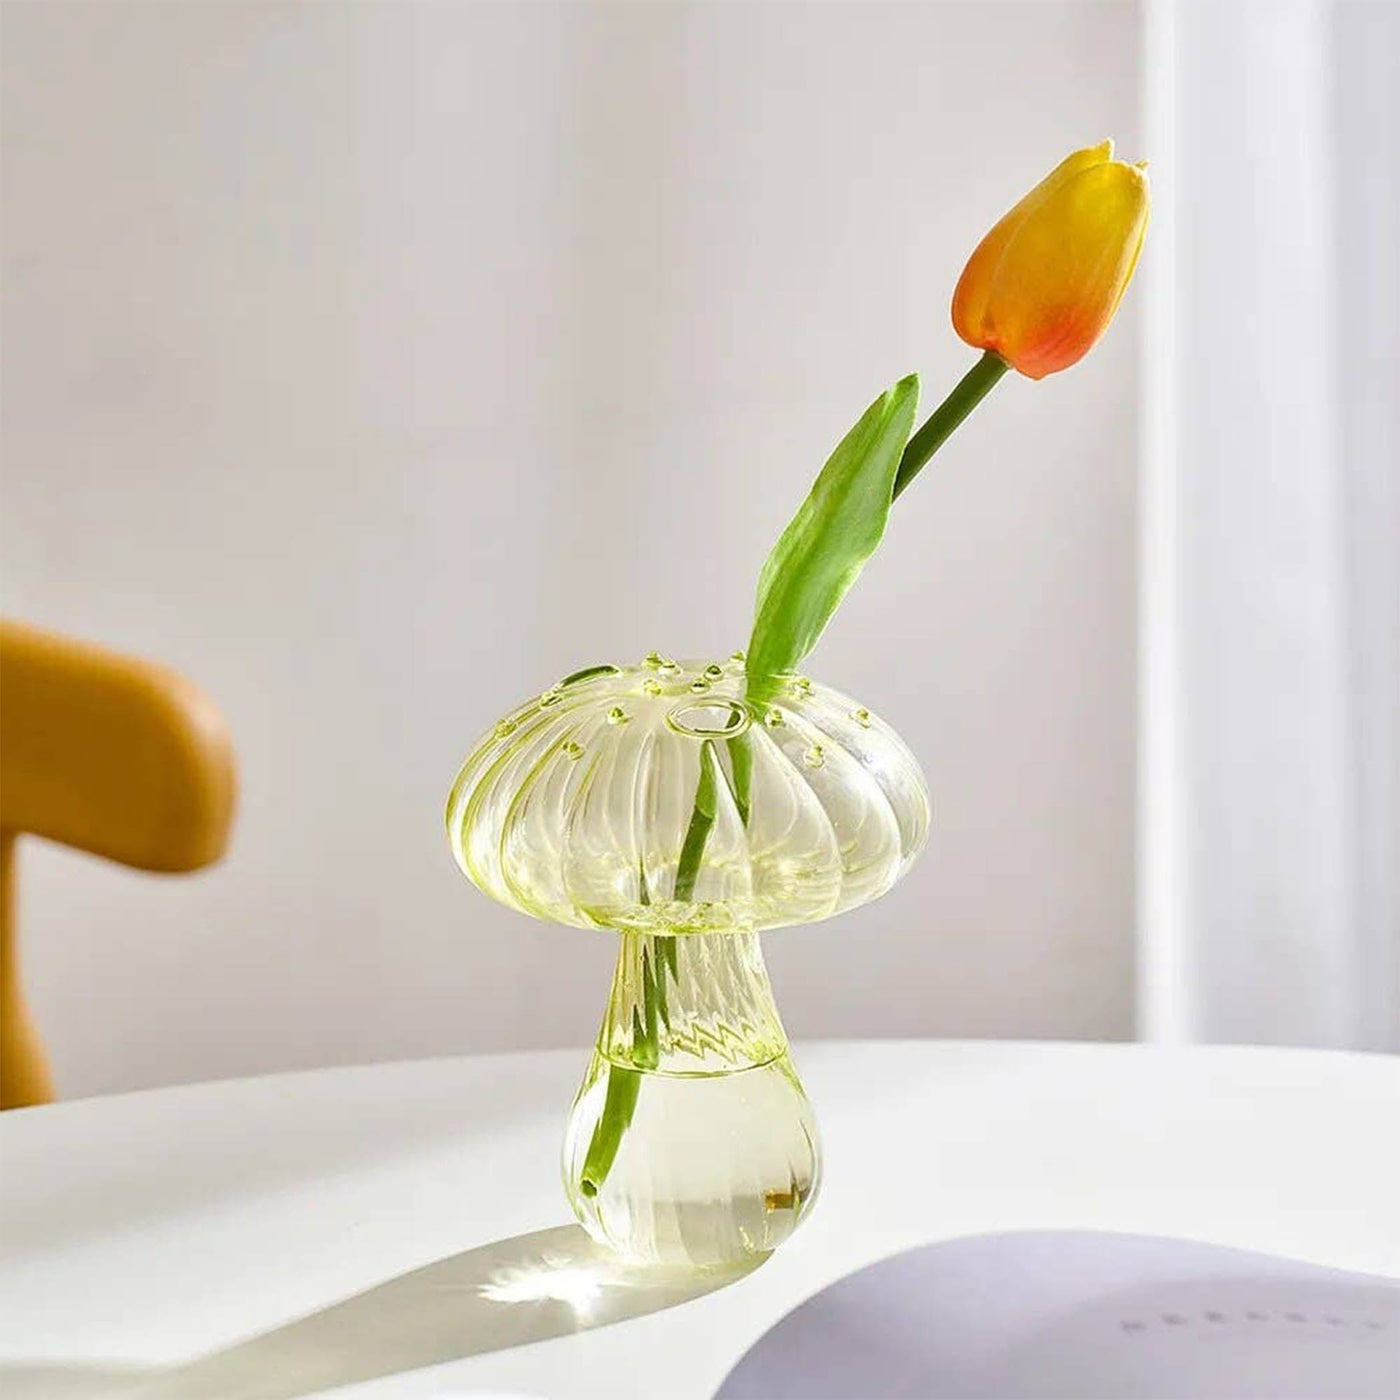 Ajoutez une note d'élégance à votre décor avec les vases Champignon en verre de Filtrum Home. Leur transparence et leur forme innovante offrent une solution créative pour mettre en valeur vos fleurs préférées.